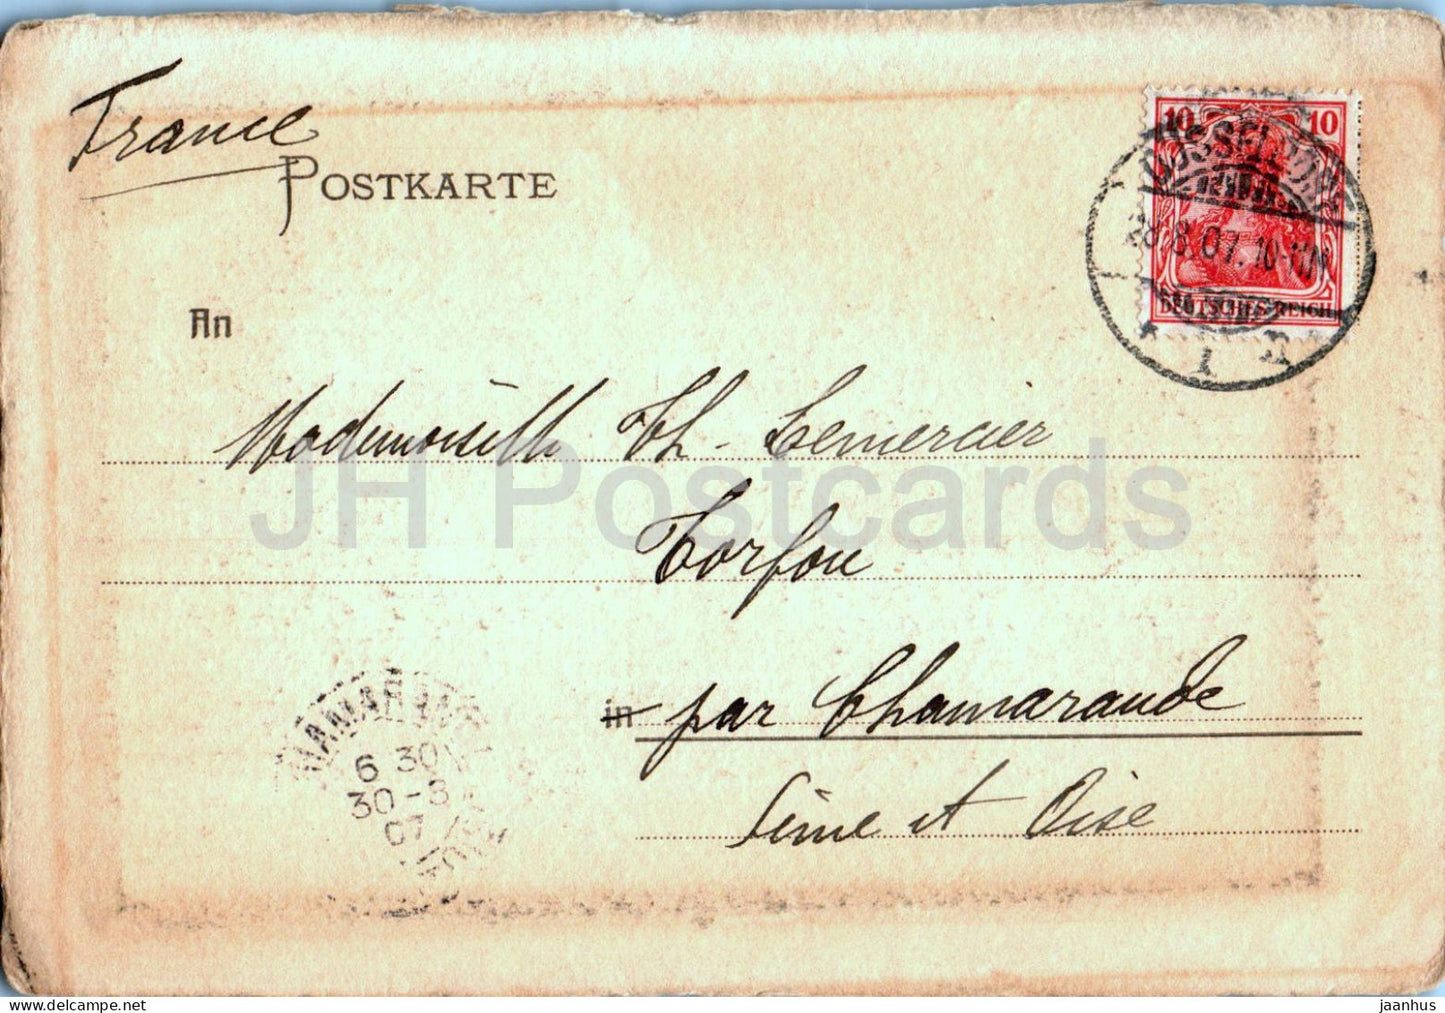 Düsseldorf - Köln - Kunstpalast - alte Postkarte - 1907 - Deutschland - gebraucht 